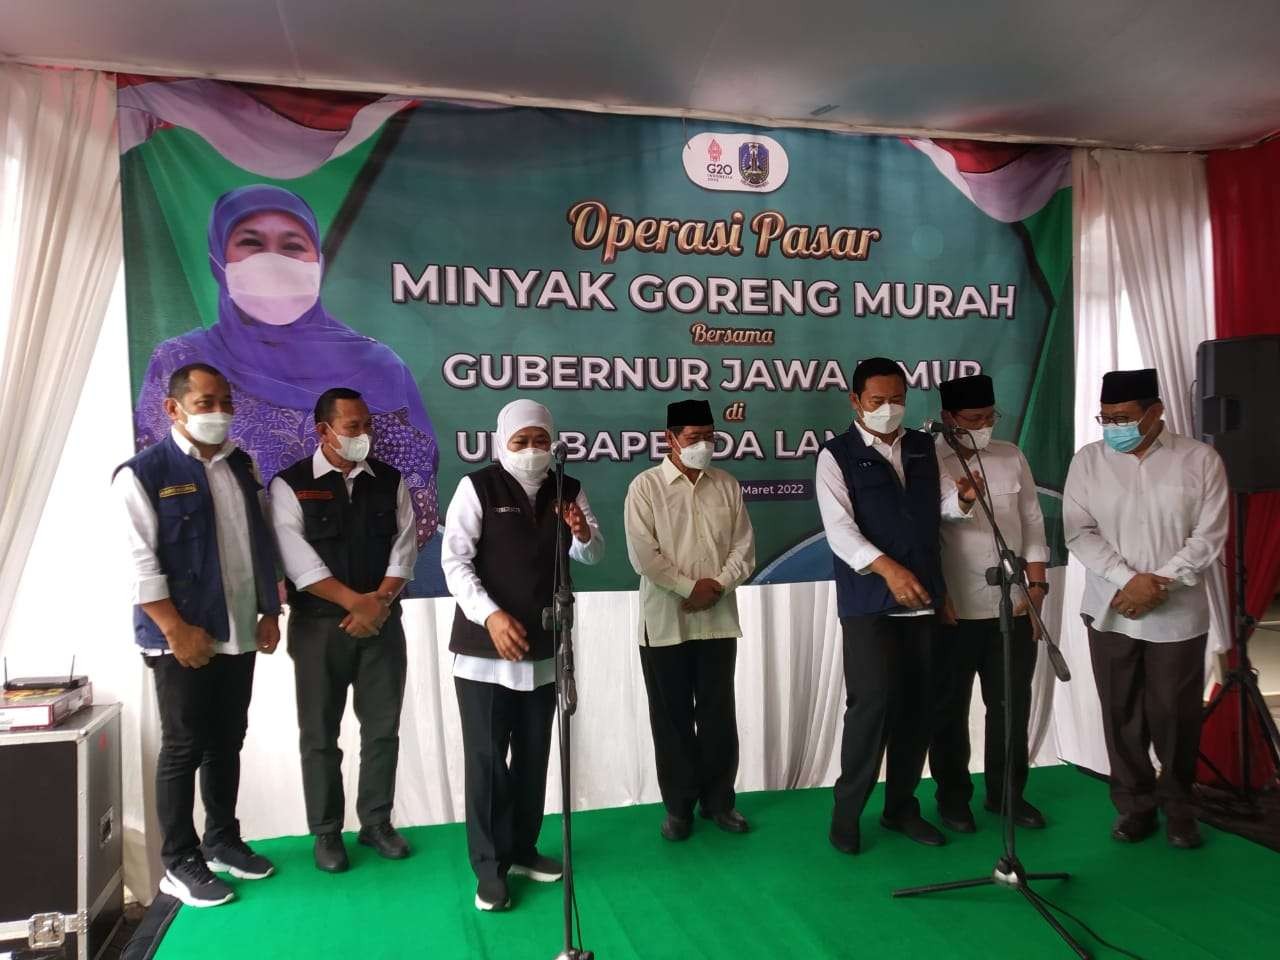 Gubernur Jawa Timur Khofifah Indar Parawansa didampingi Bupati Lamongan Yuhronur Efendi dalam operasi pasar minyak goreng murah. (Foto: Imron Rosidi/ngopibareng.id)